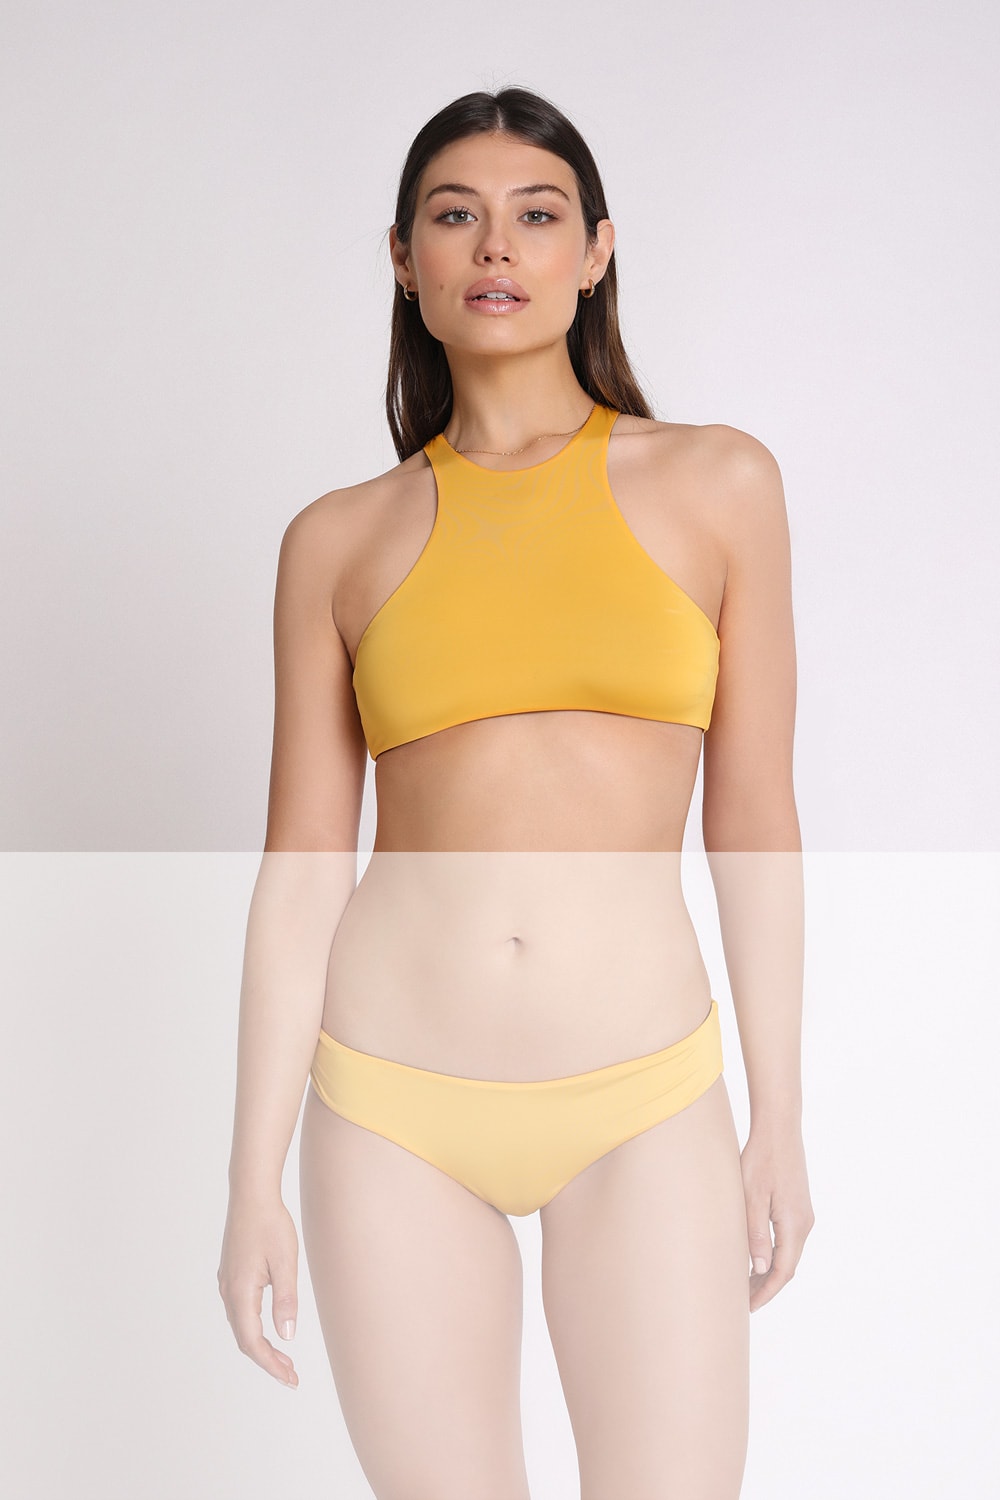 Marion Zimet Halter Neck Bikini Top, Reversible, In Microfiber